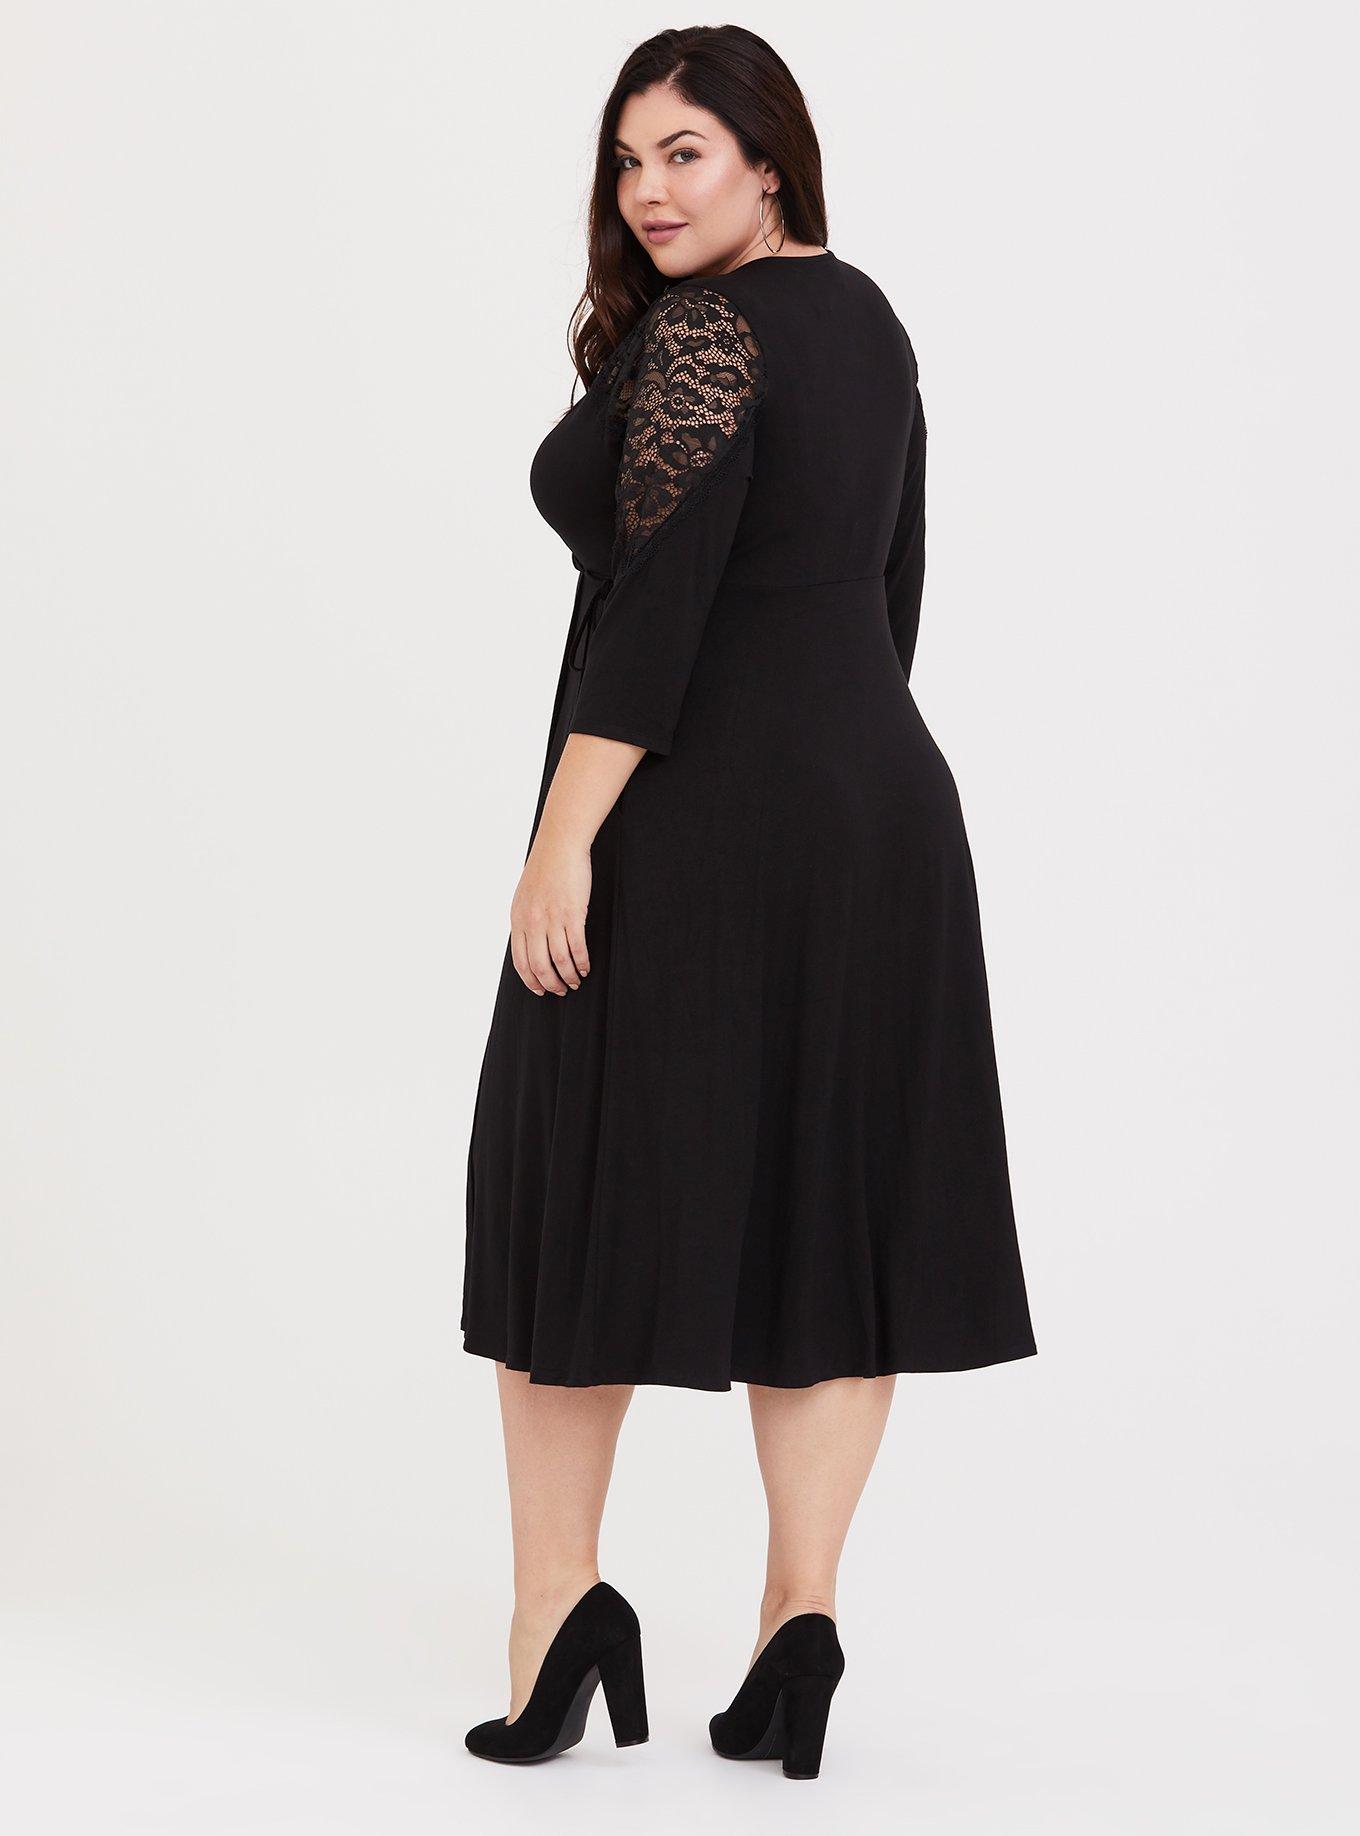 Plus Size - Black Lace Inset Jersey Wrap Dress - Torrid